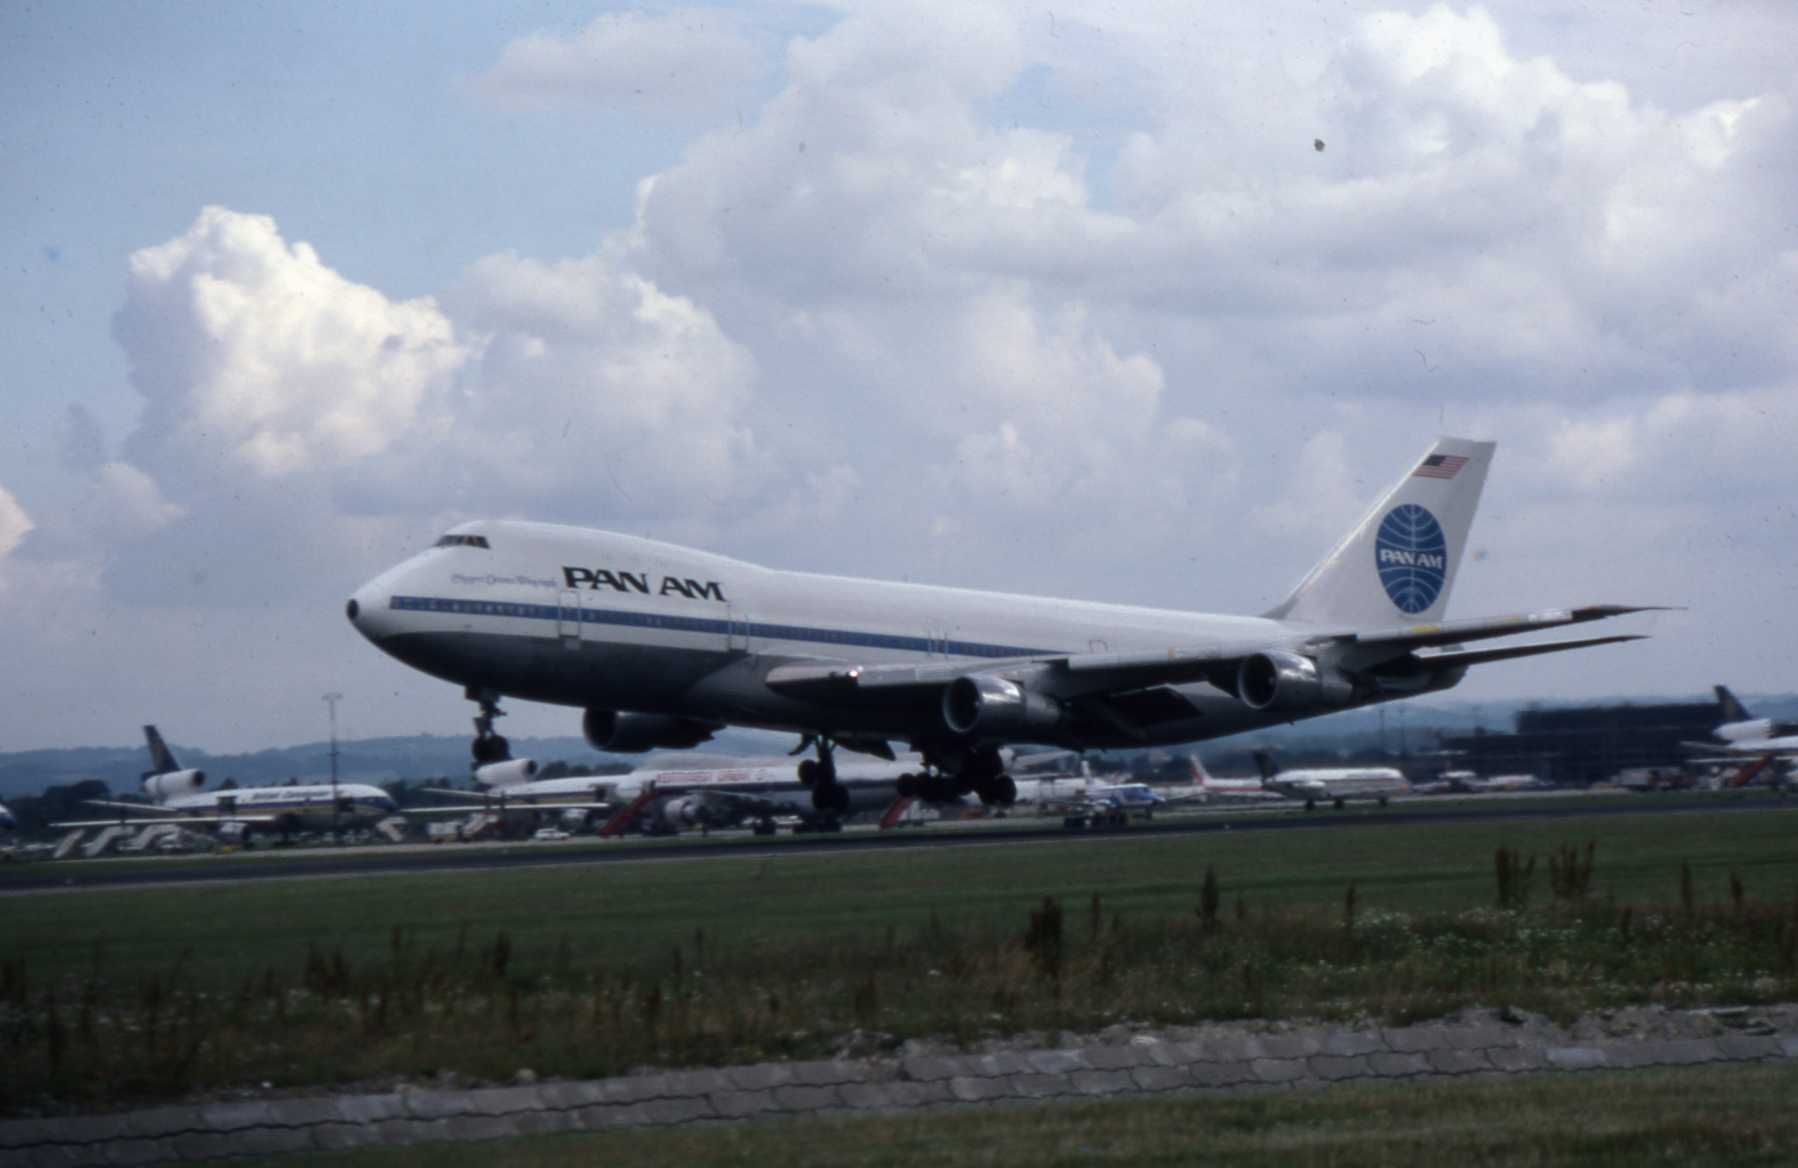 Pan Am Boeing 747